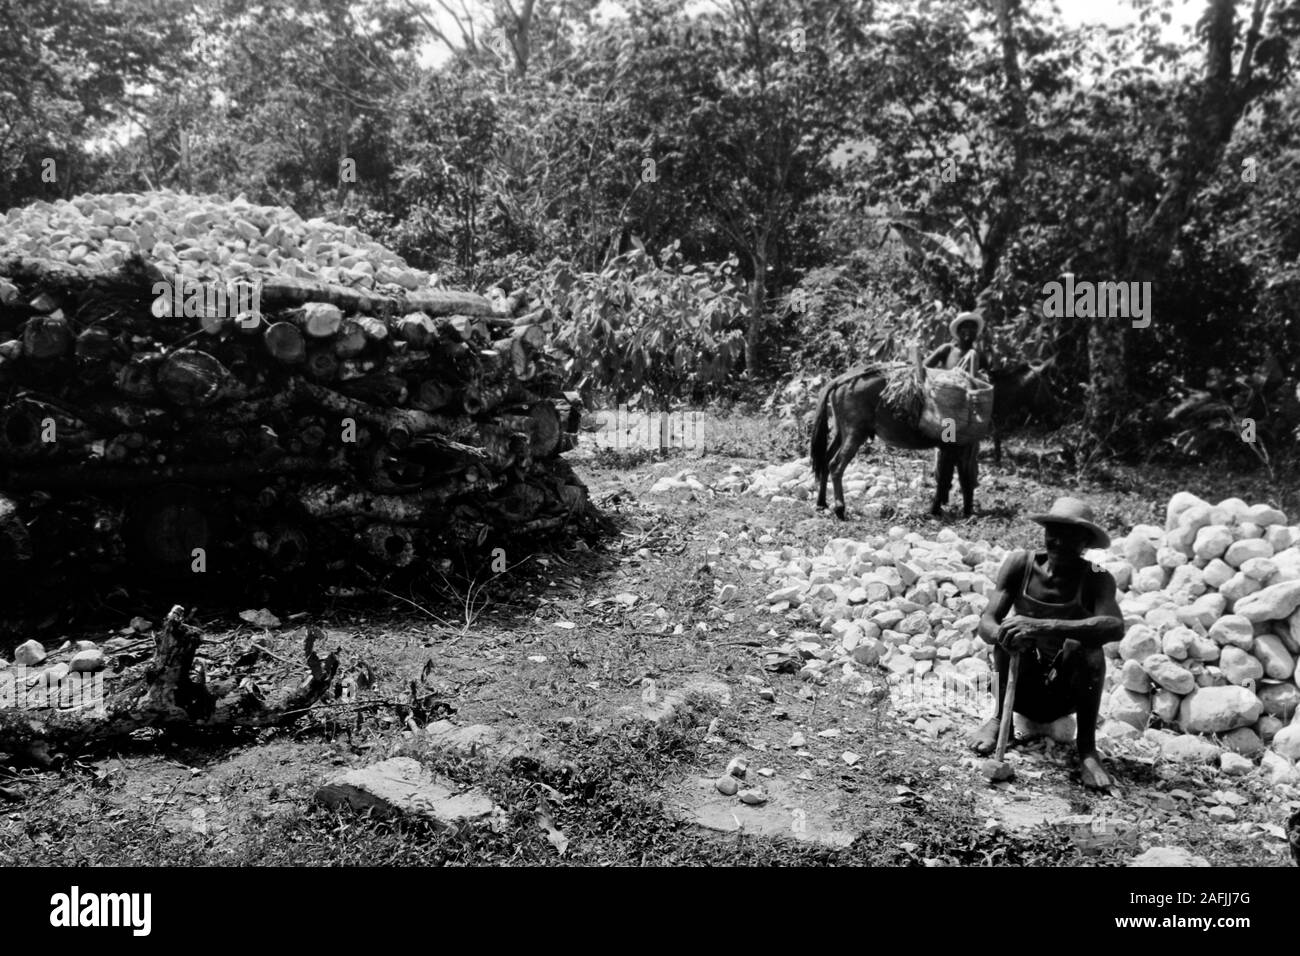 Von Cap-Haitien nach Port-au-Prince - Kalkbrennerei, 1967. Lime Klin 1967. Foto Stock